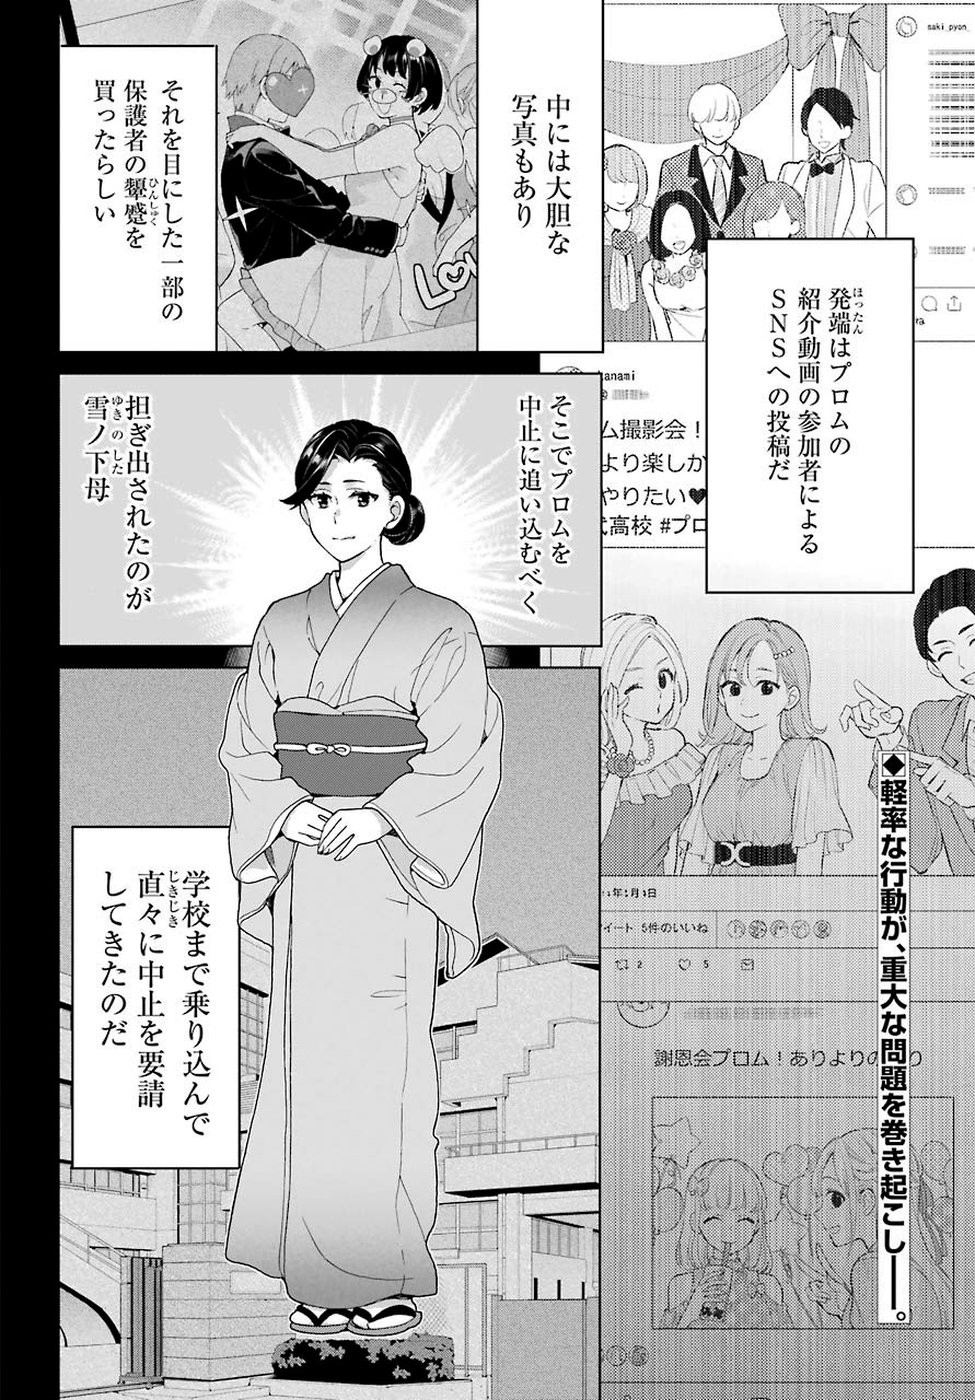 Yahari Ore no Seishun Rabukome wa Machigatte Iru. - Monologue - Chapter 76 - Page 2